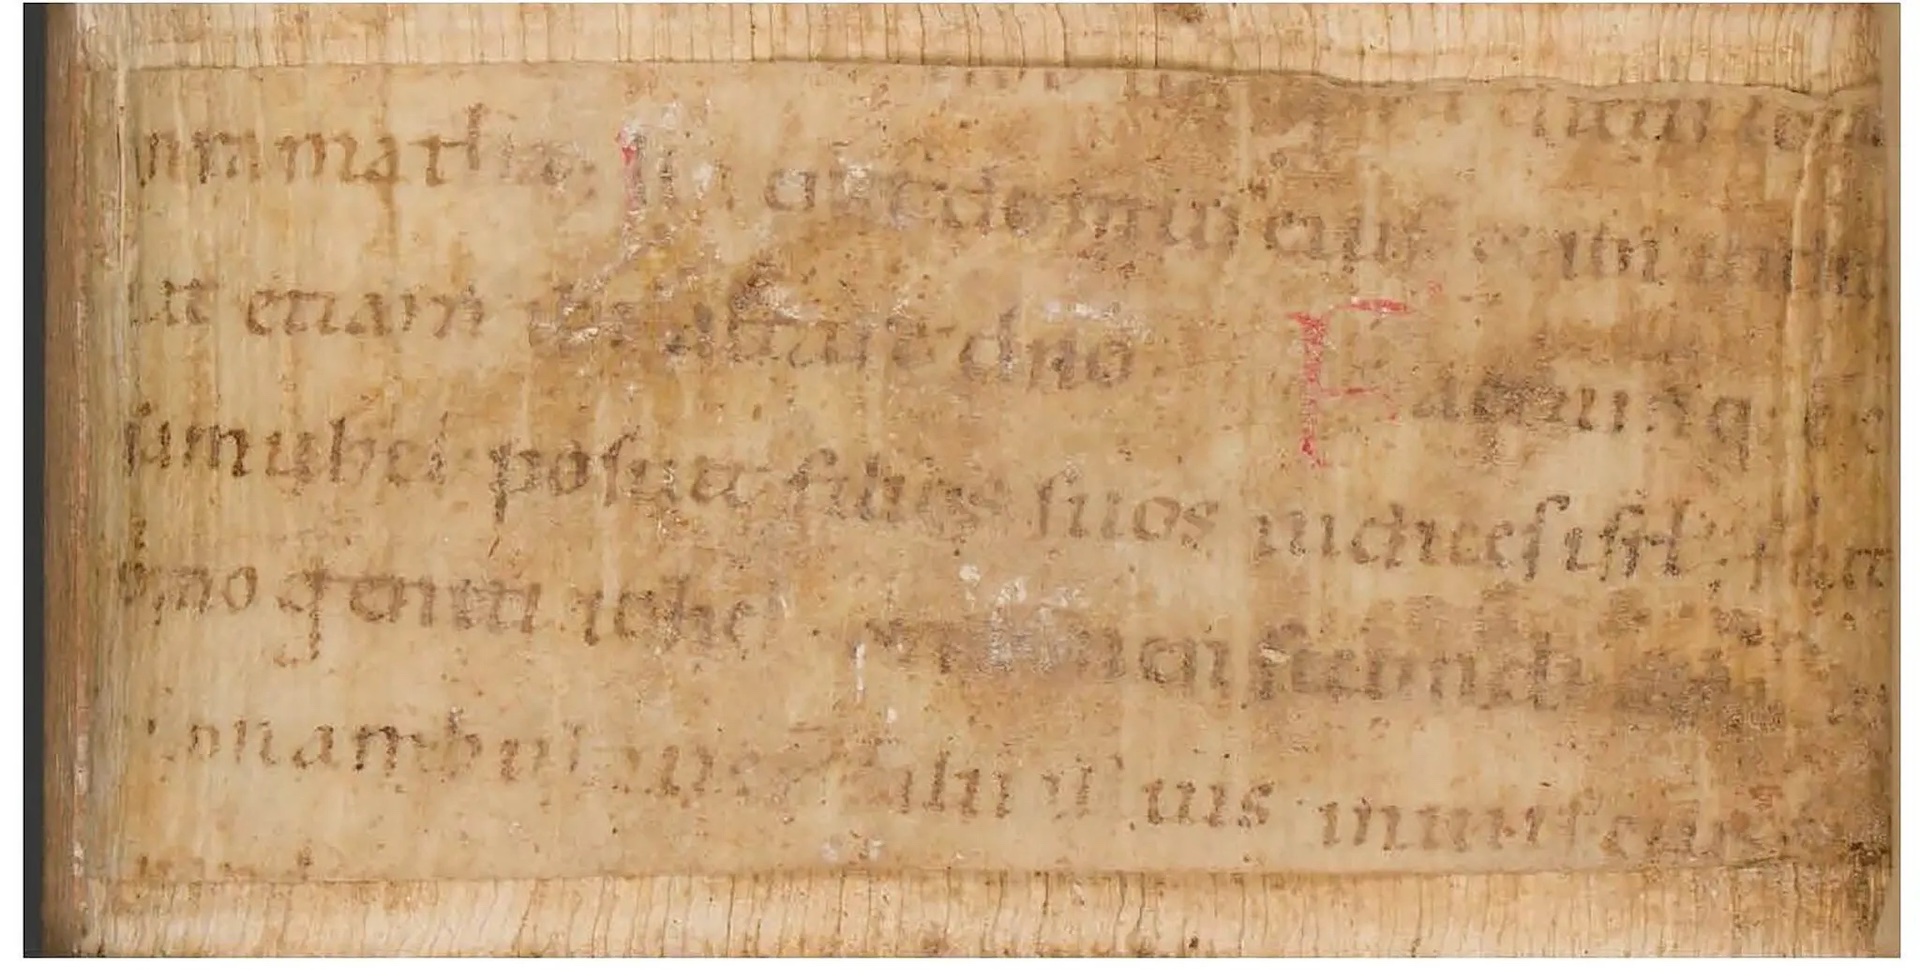 Una visita al hospital revela secretos medievales escondidos en libros